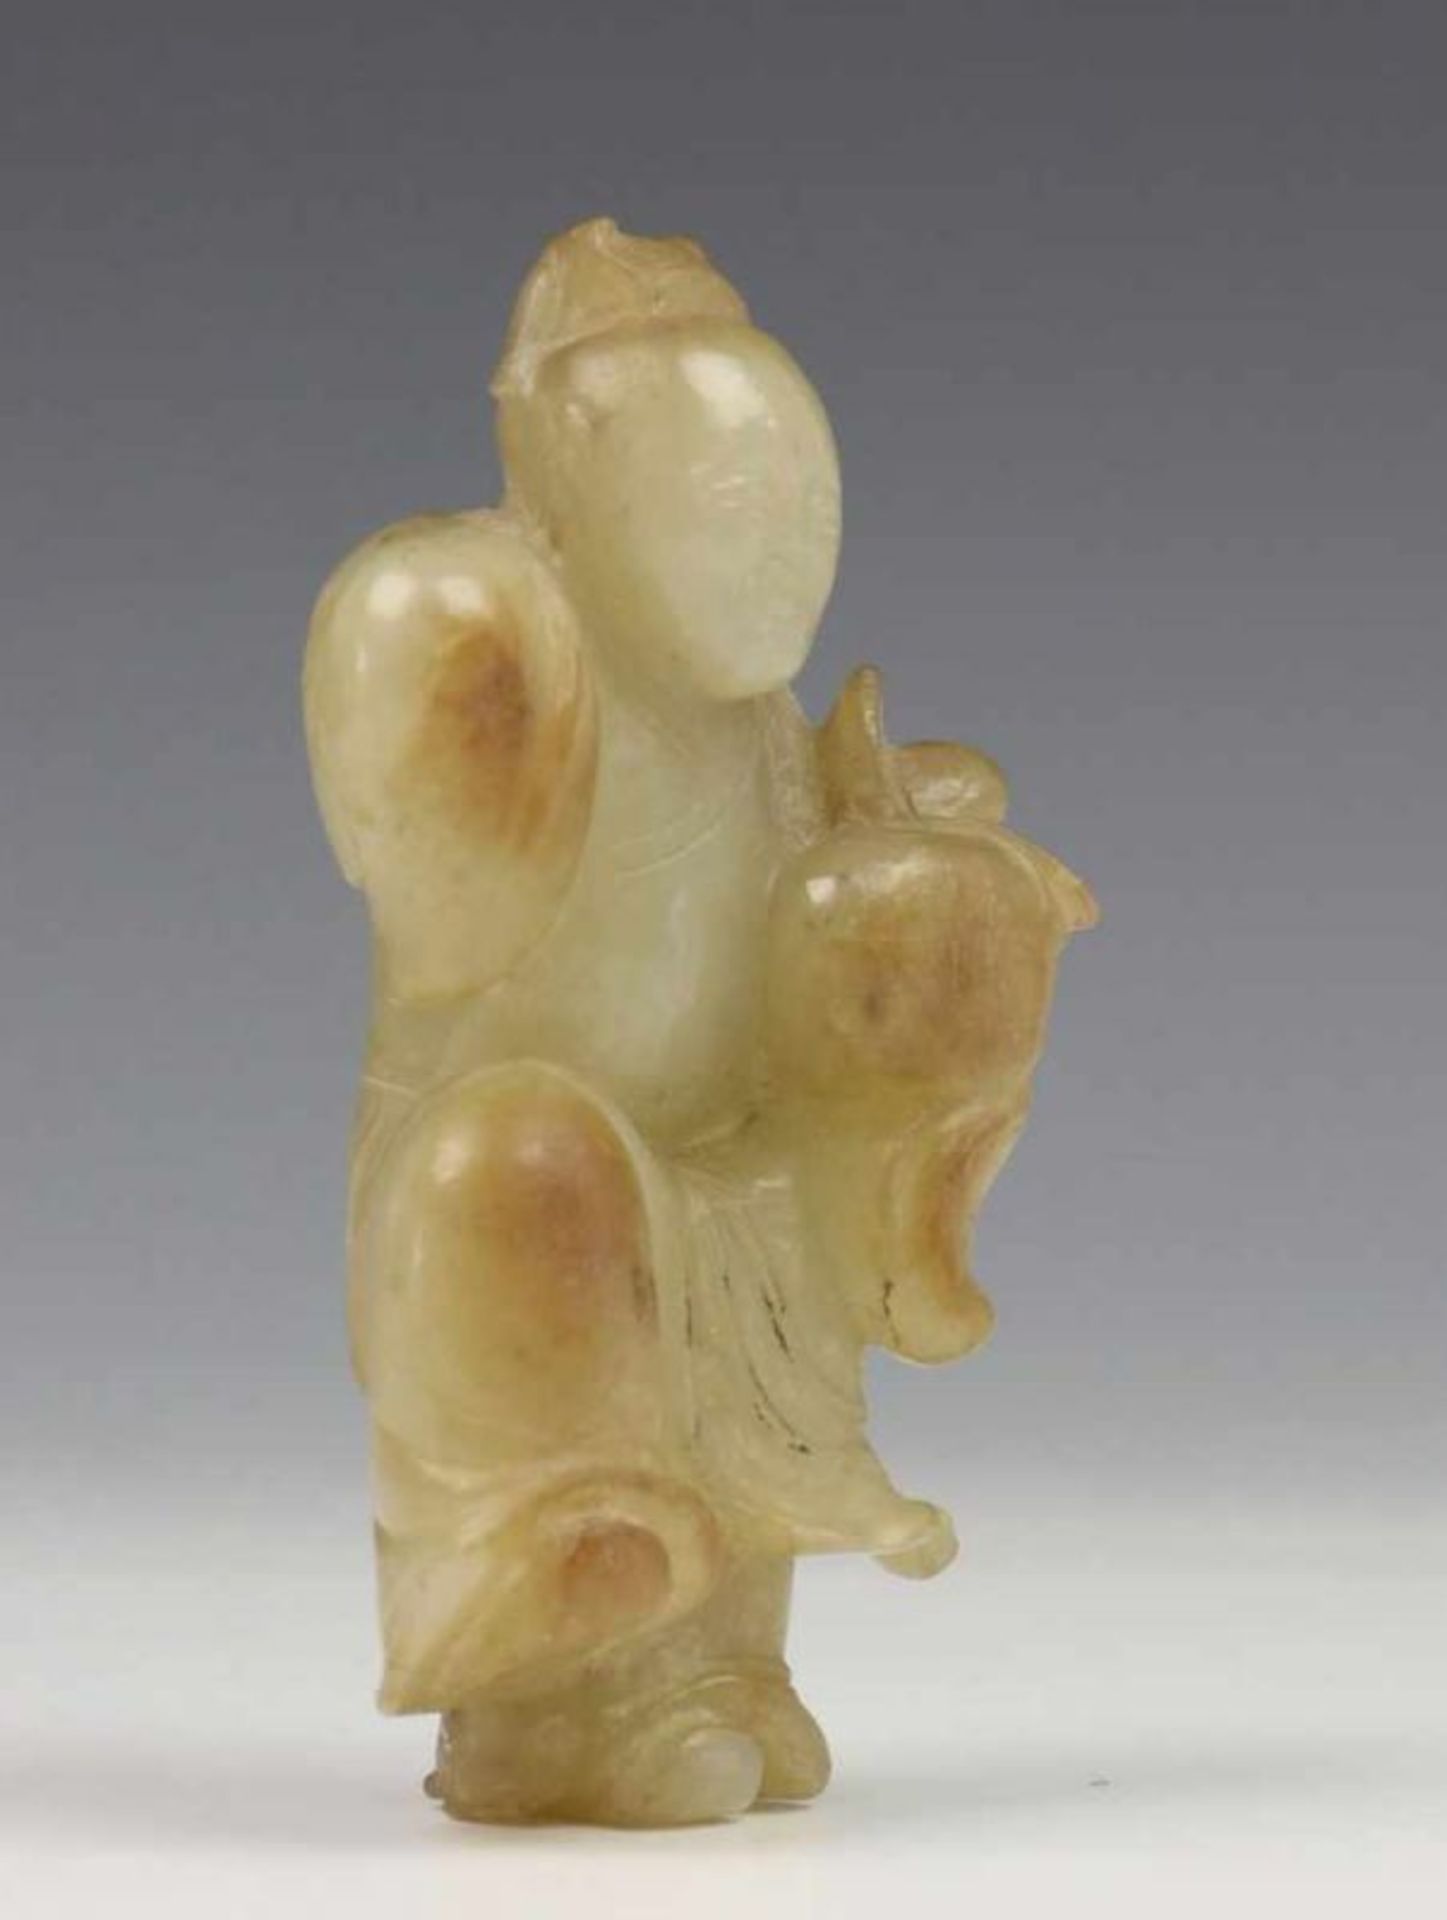 China, celadonkleurig jade snijwerk, 19e eeuw; Zotje met perzik in de hand en opgetrokken been l. - Image 2 of 2